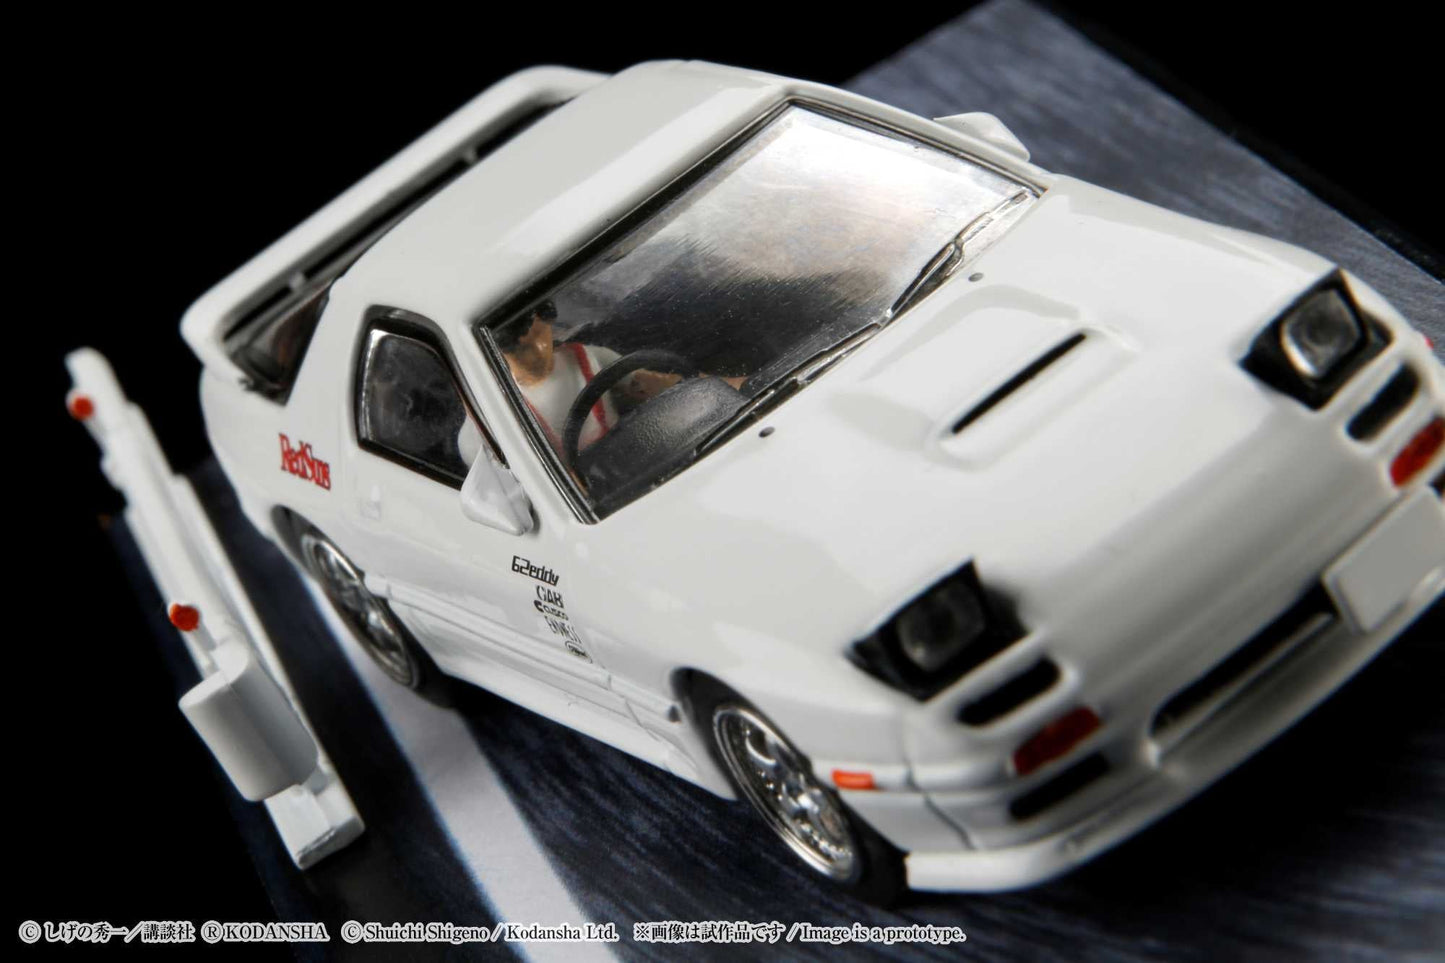 Hobby Japan 1/64 Mazda RX-7 (FC3S) RedSuns / Ryosuke Takahashi (Diorama Set)